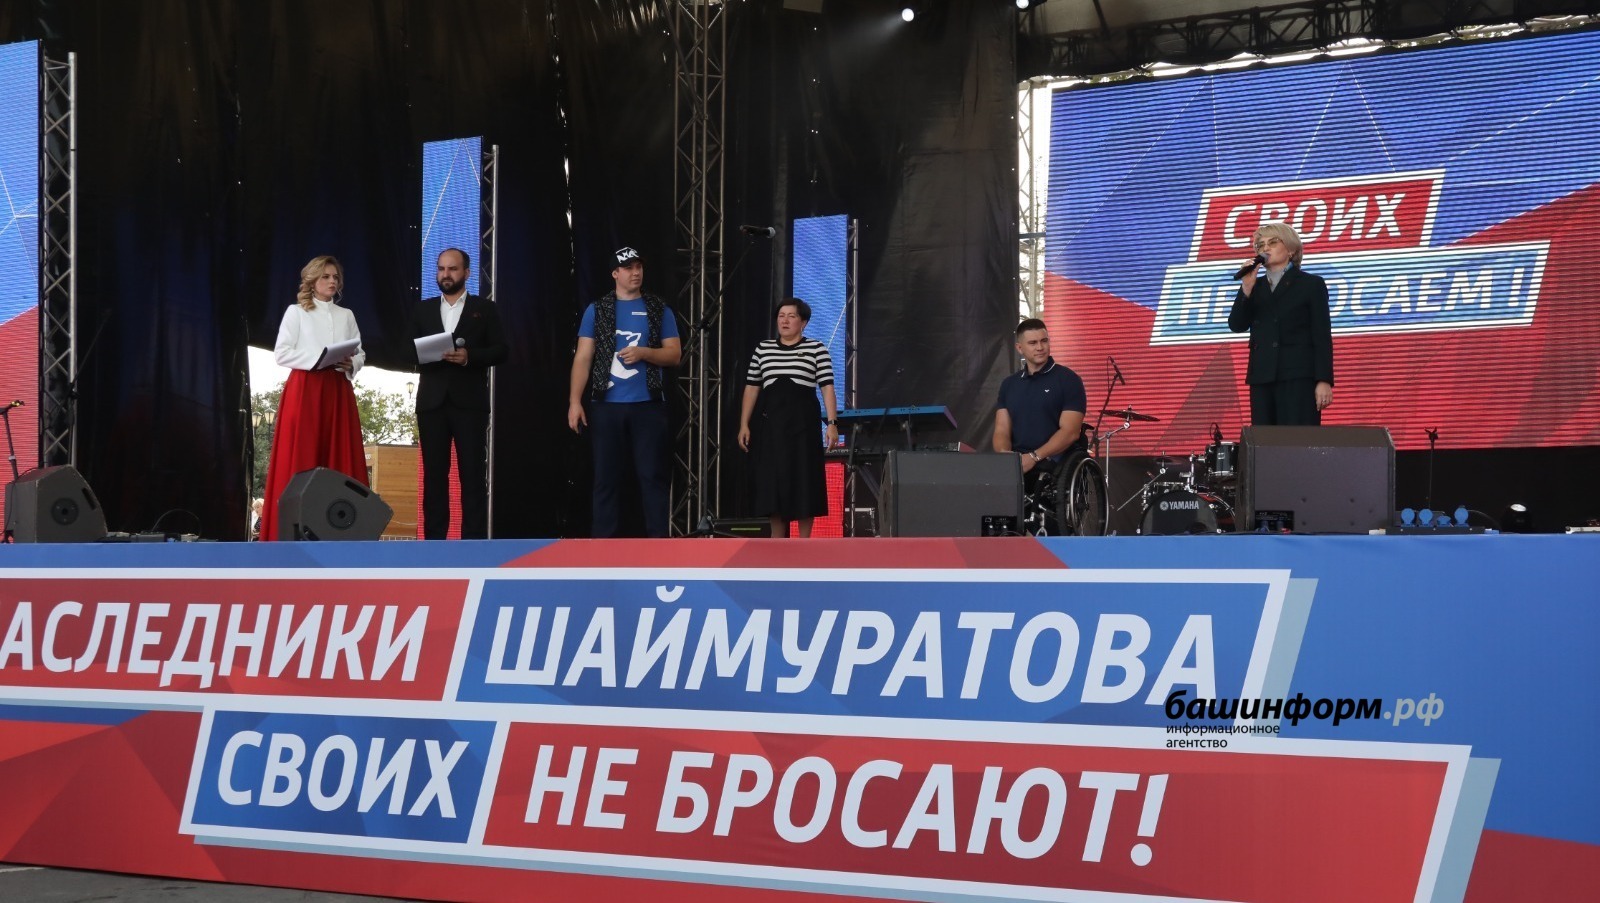 В Уфе более 20 тысяч человек собрались на митинг-концерт "Потомки Шаймуратова своих не бросают"